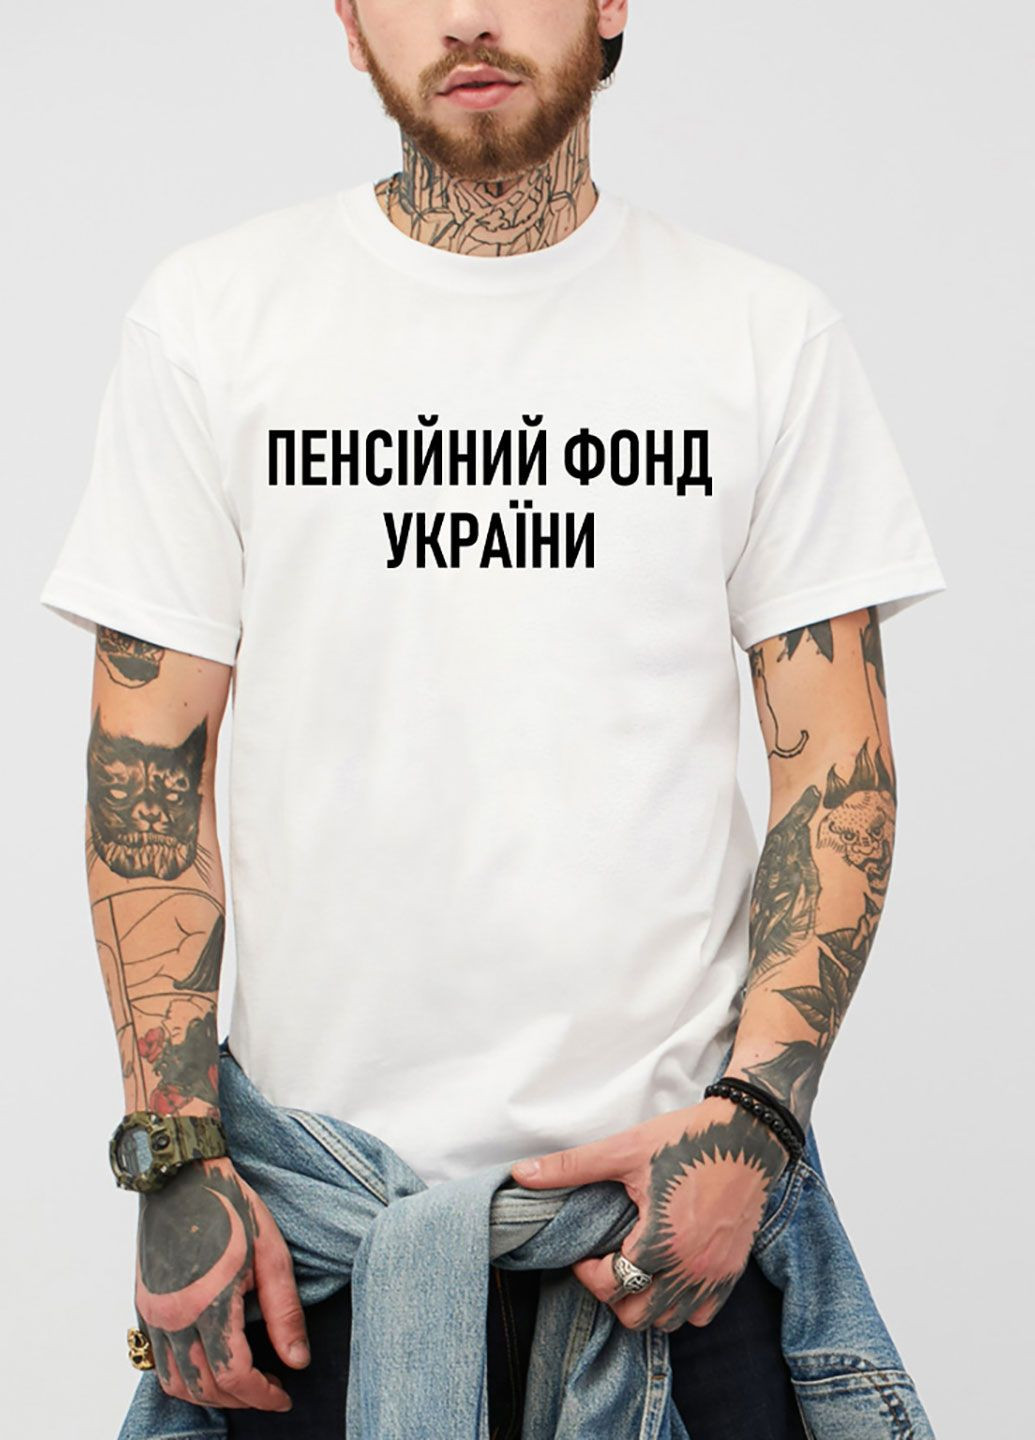 Біла футболка чоловіча біла пенсійний фонд україни Love&Live